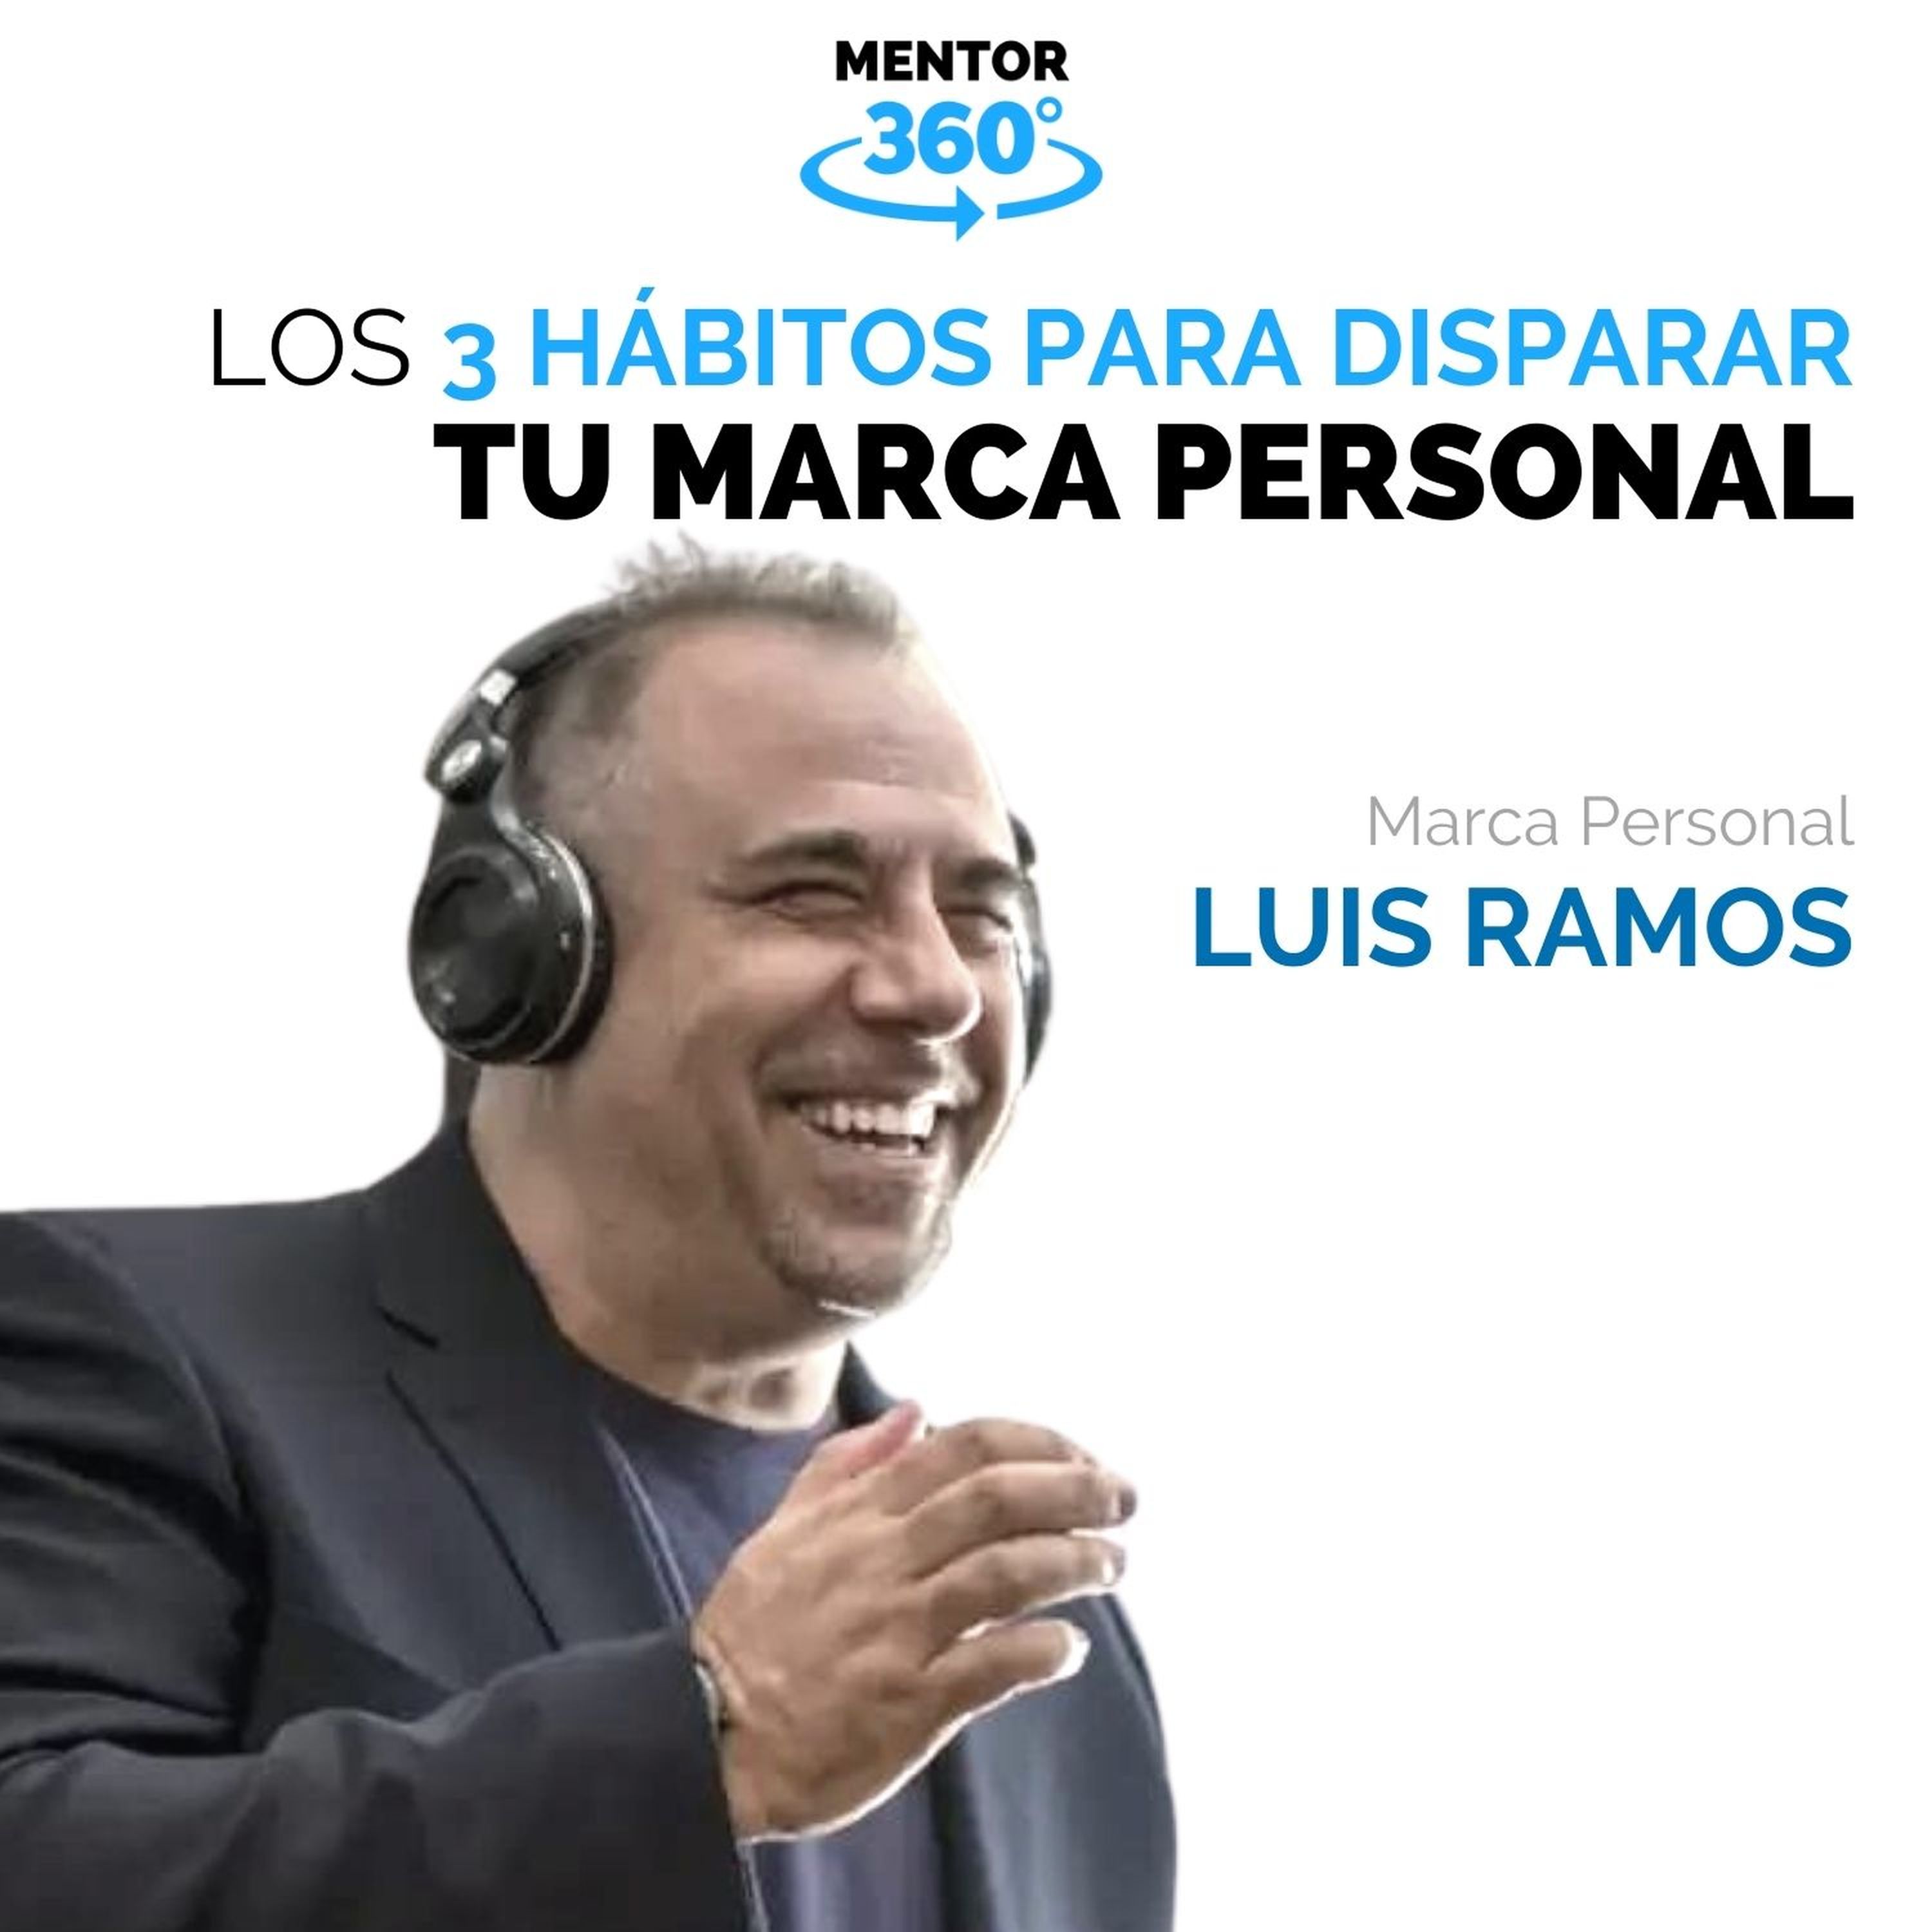 Los 3 Hábitos para Disparar Tu Marca Personal - Luis Ramos - Marca Personal - MENTOR360